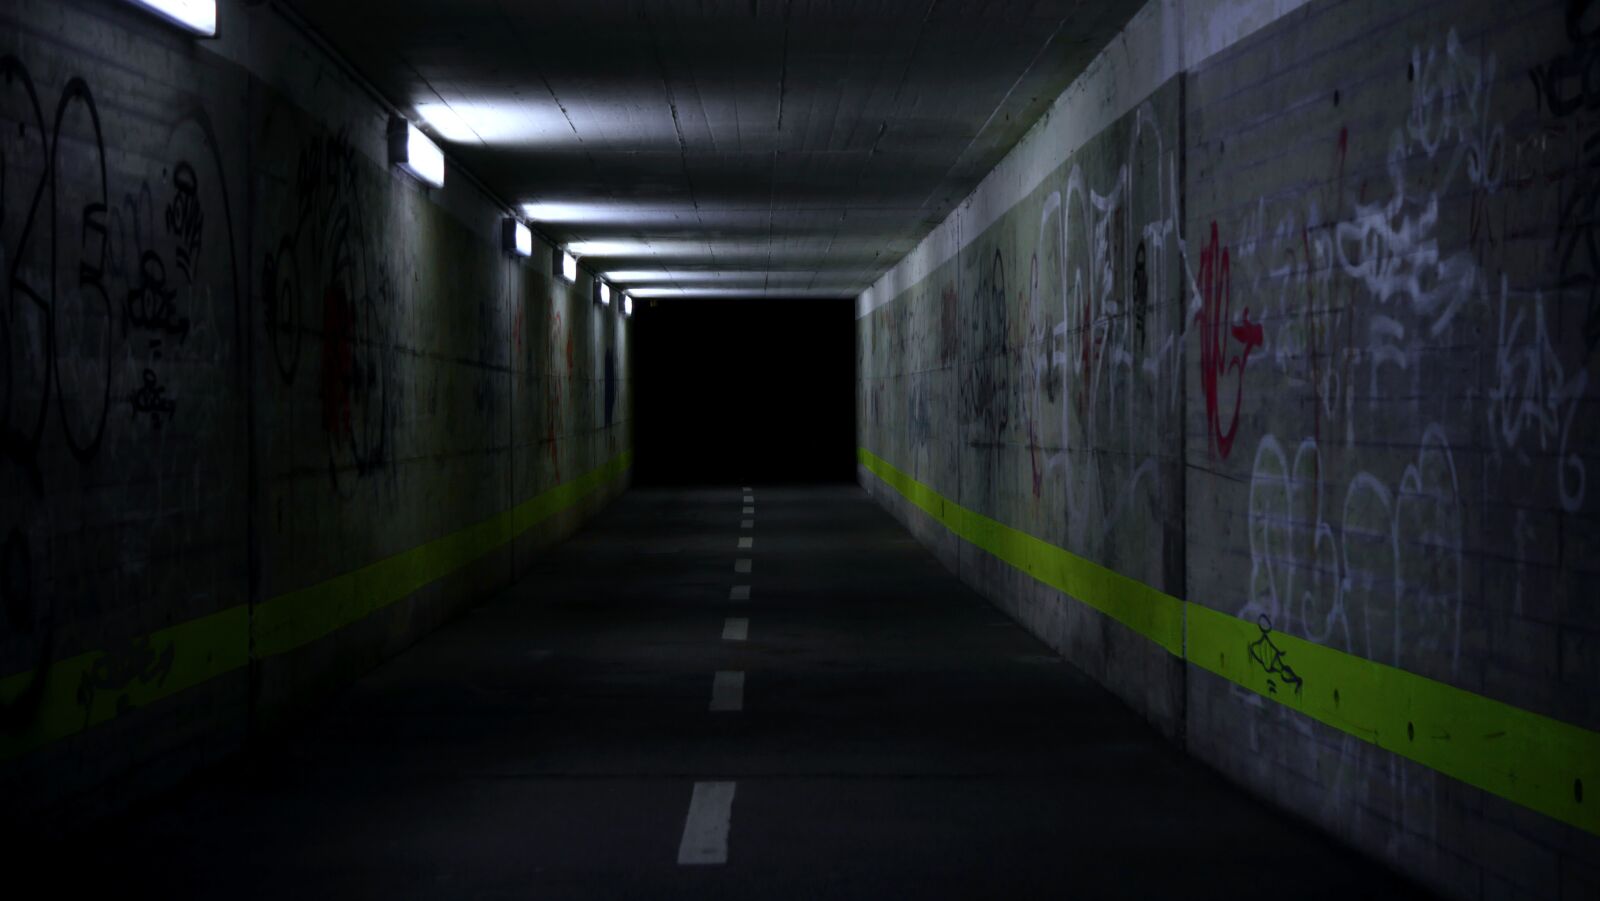 Panasonic Lumix DMC-GX8 sample photo. Underpass, tunnel, graffiti photography